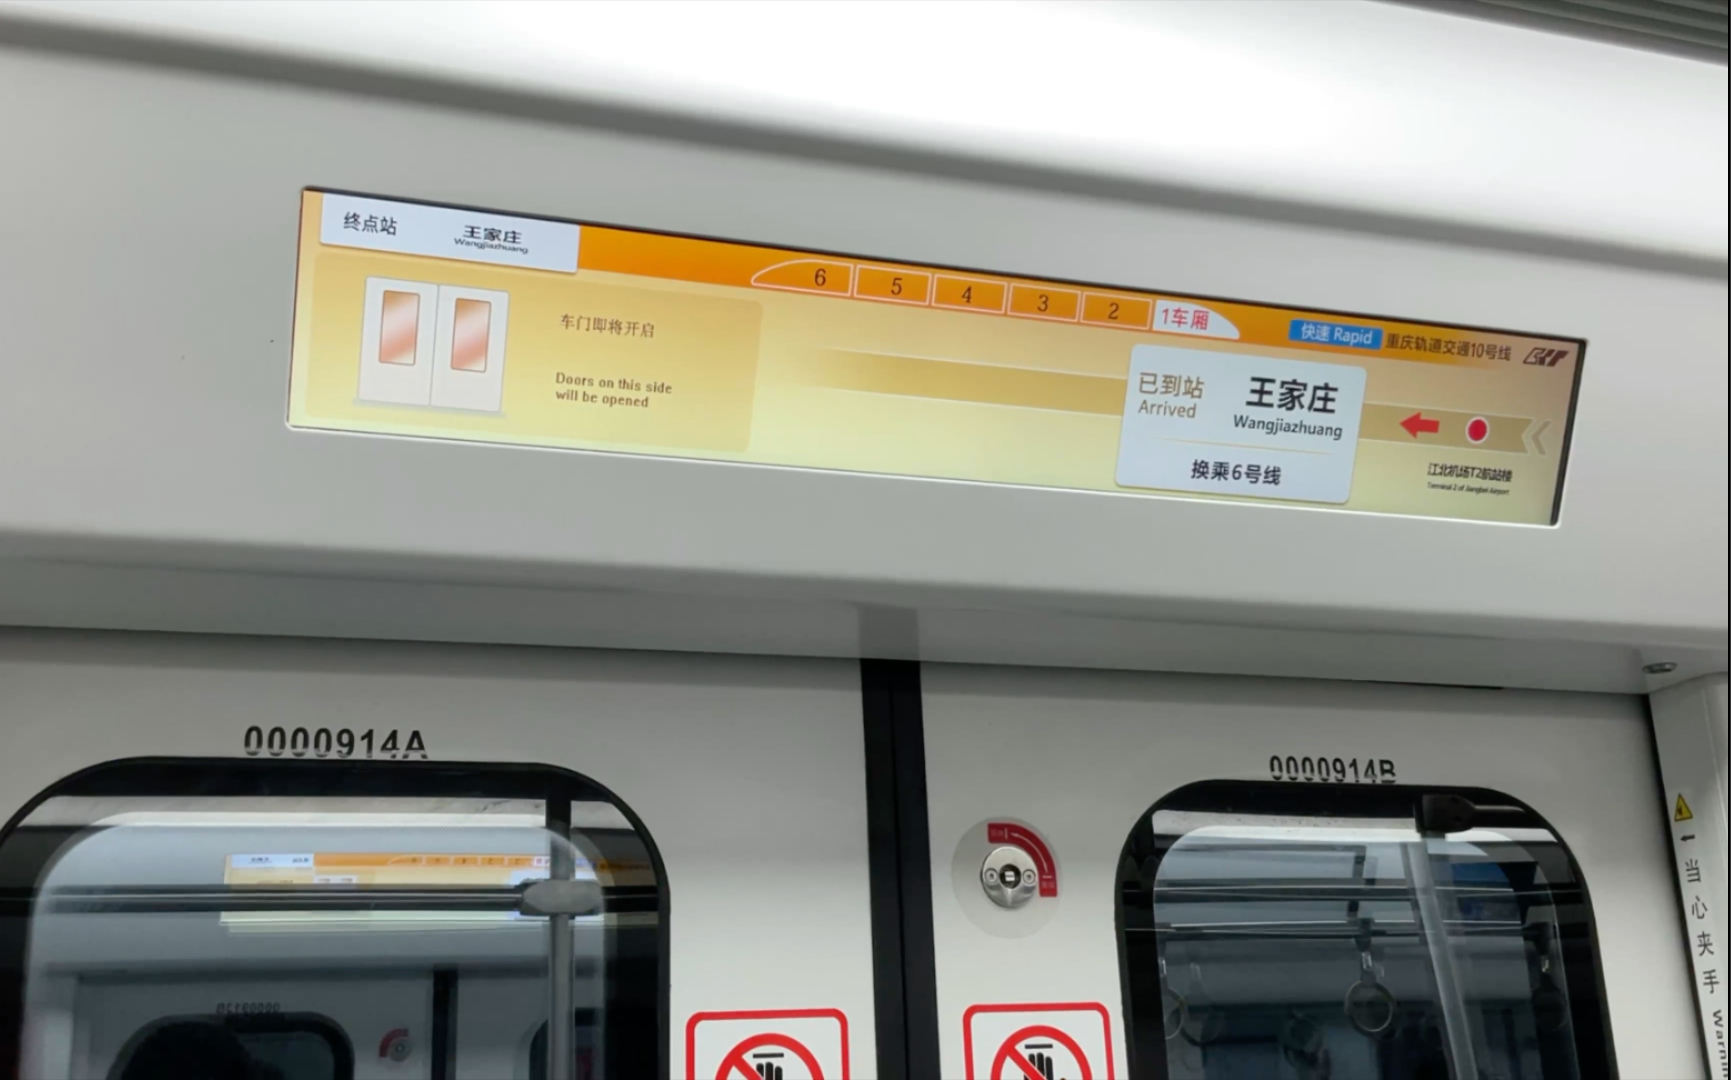 【重庆轨道交通】10号线终点站王家庄站前临时停